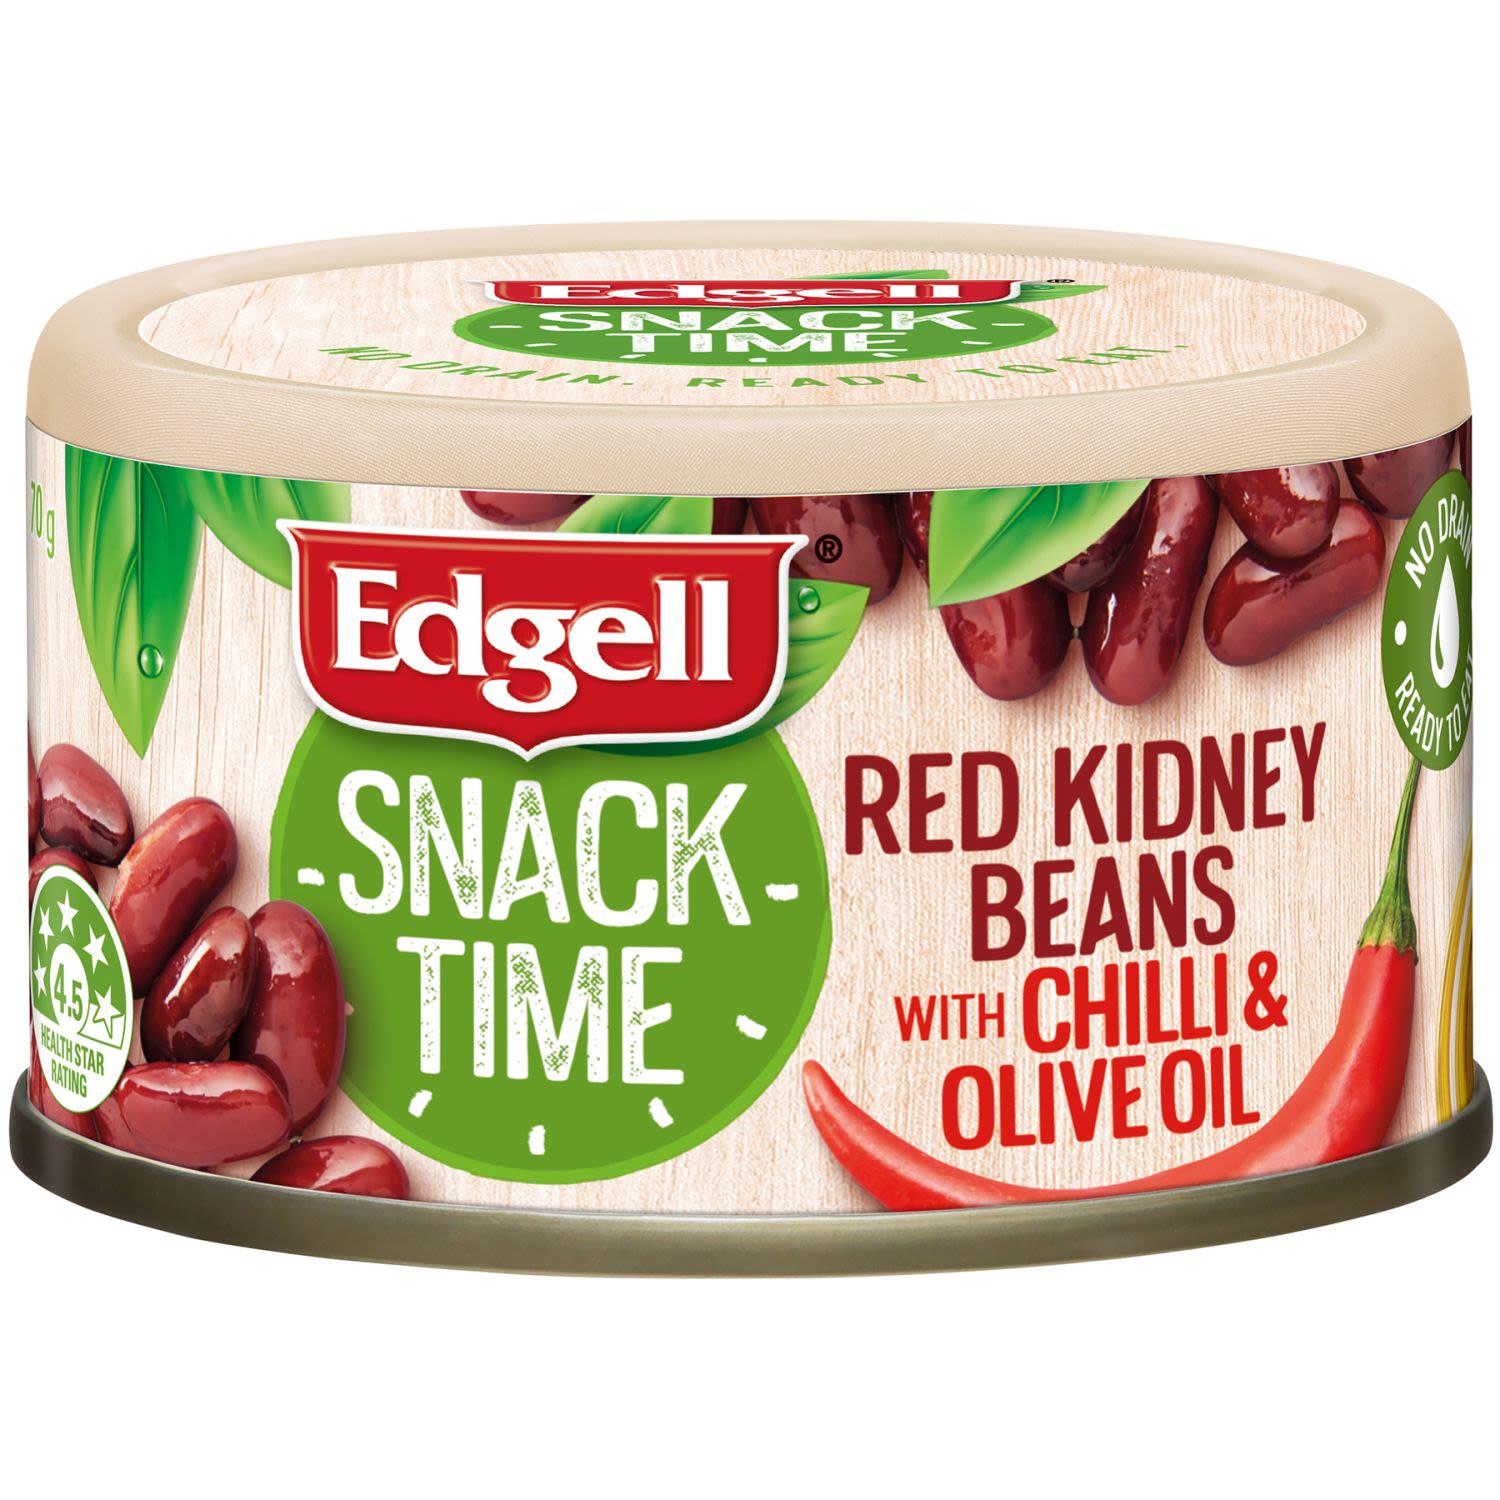 Edgell Red Kidney Beans Chilli & Olive Oil, 70 Gram